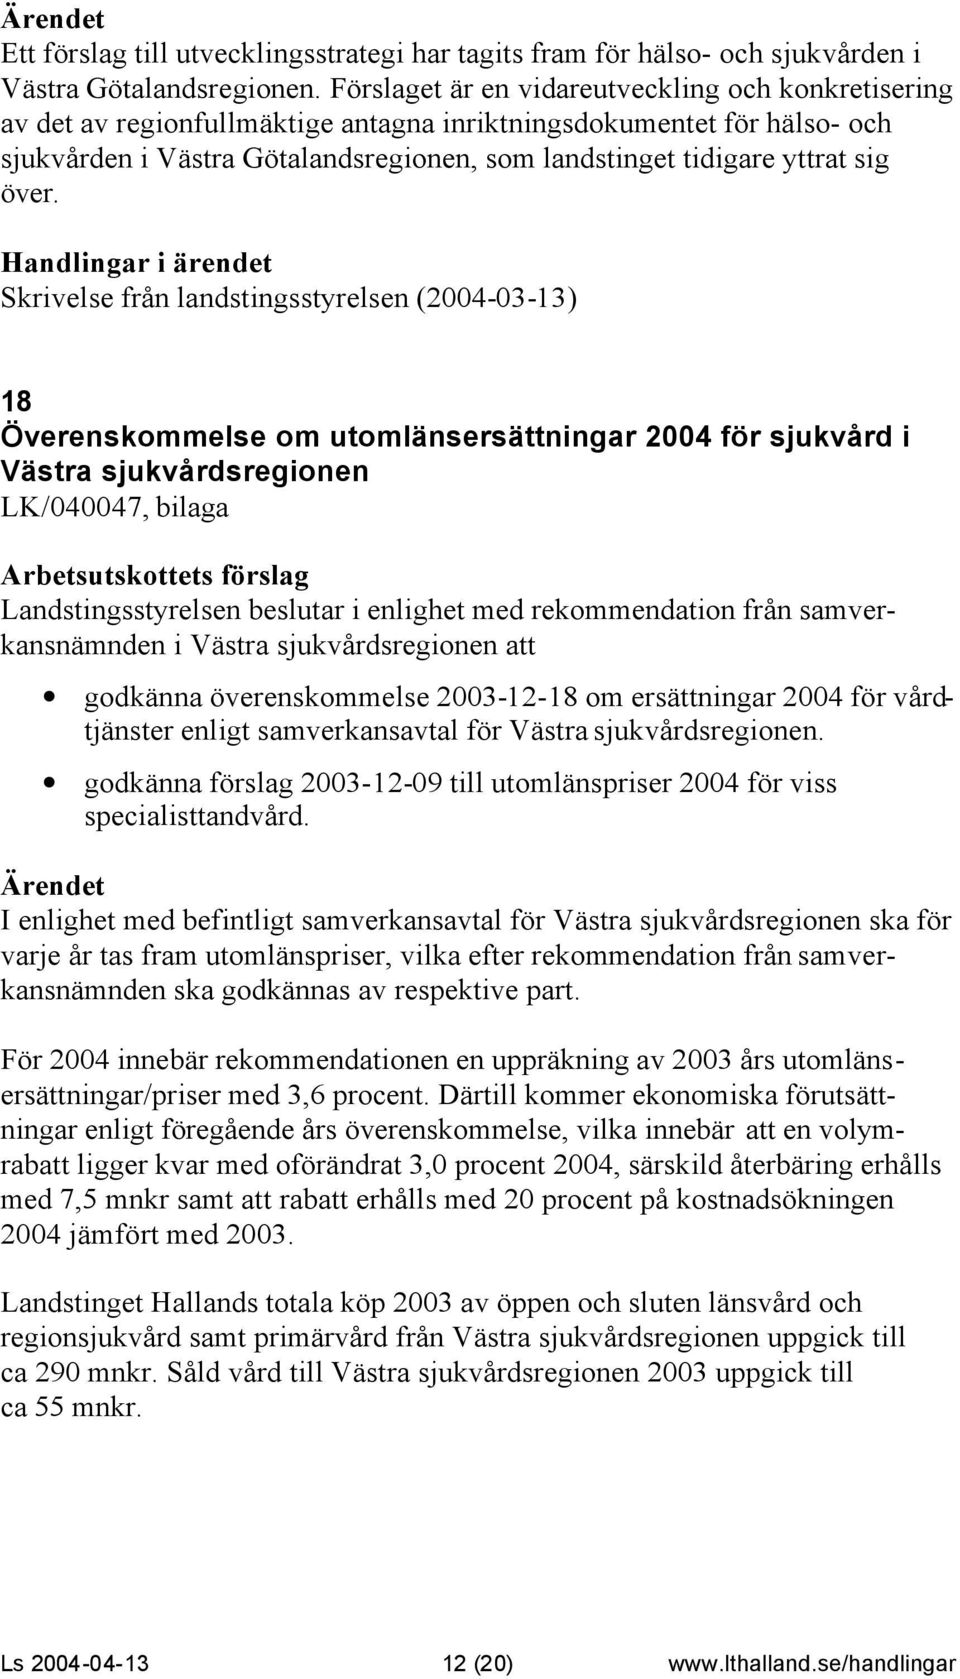 över. Skrivelse från landstingsstyrelsen (2004-03-13) 18 Överenskommelse om utomlänsersättningar 2004 för sjukvård i Västra sjukvårdsregionen LK/040047, bilaga Landstingsstyrelsen beslutar i enlighet